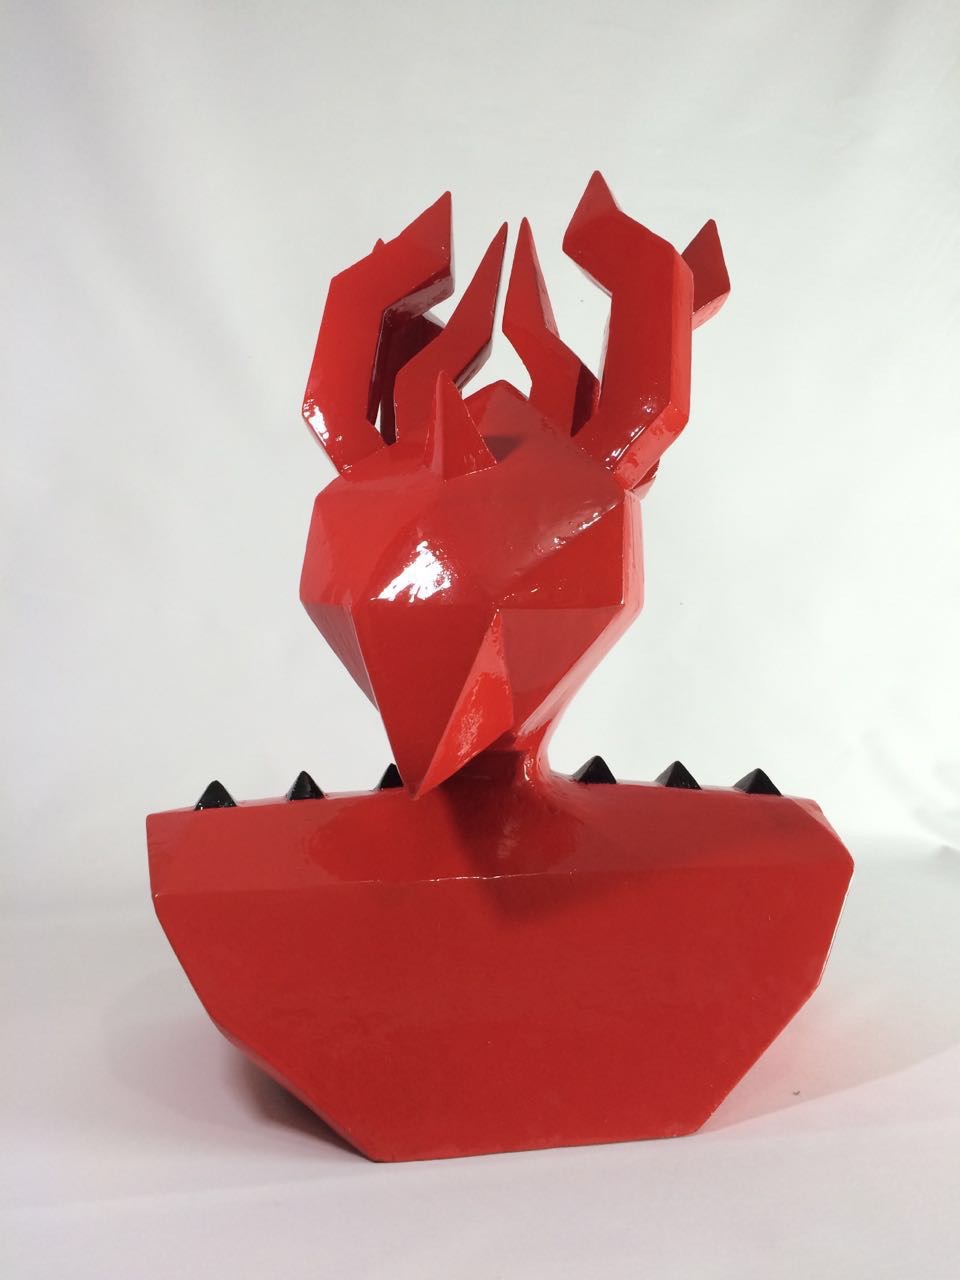 3D sculpture demon devil red shiny plastic horns Ecuador art